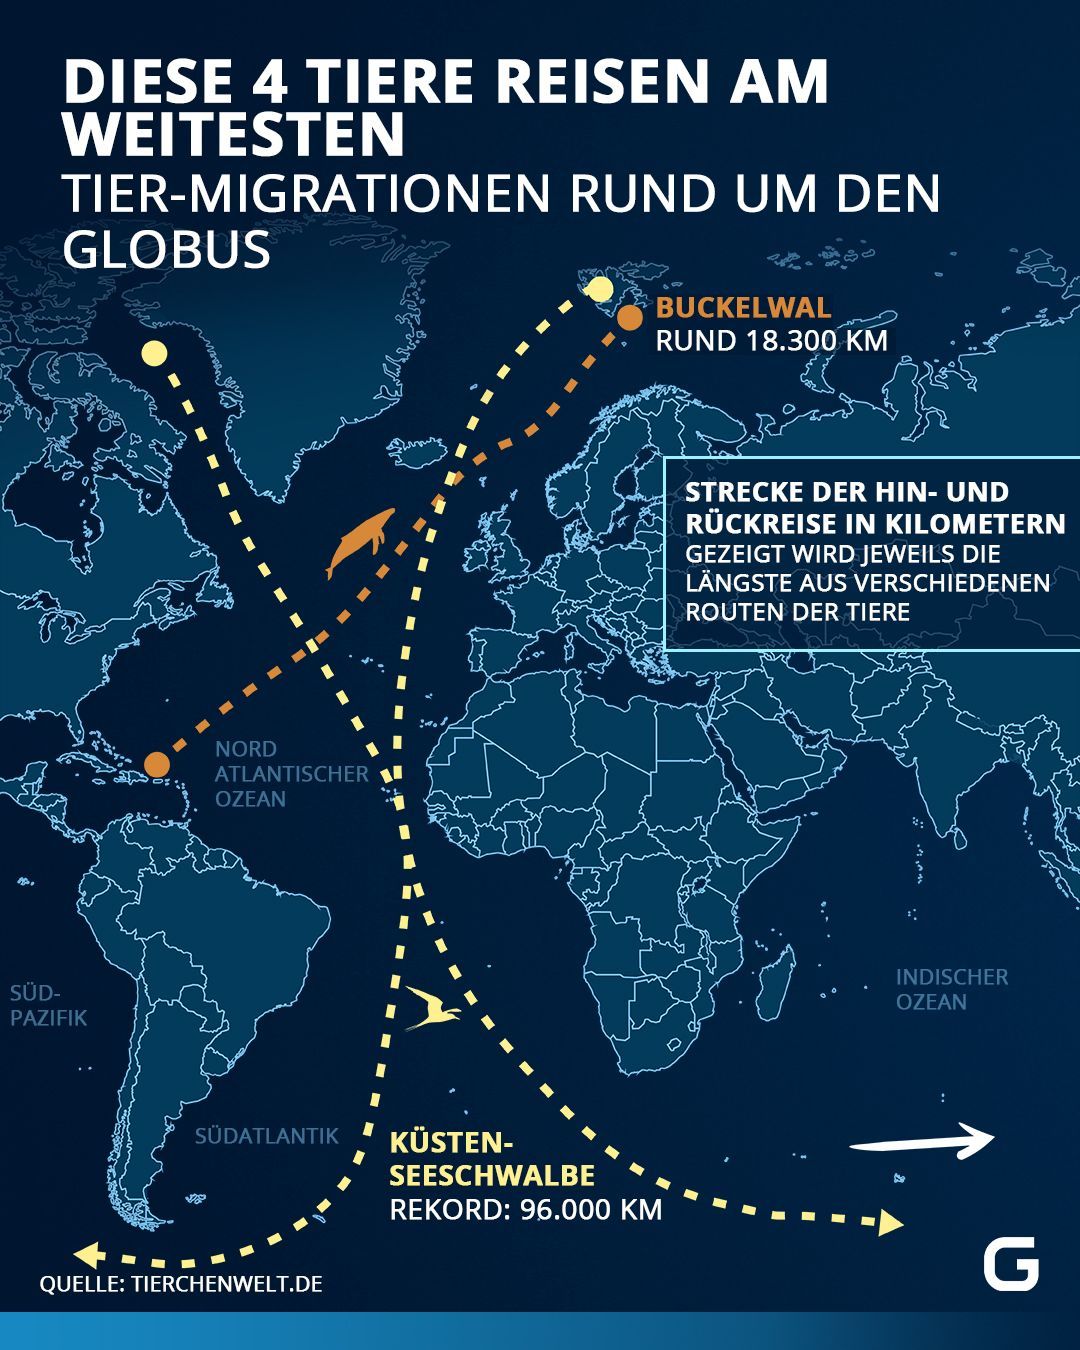 Tier-Migrationen in Kilometern rund um den Globus